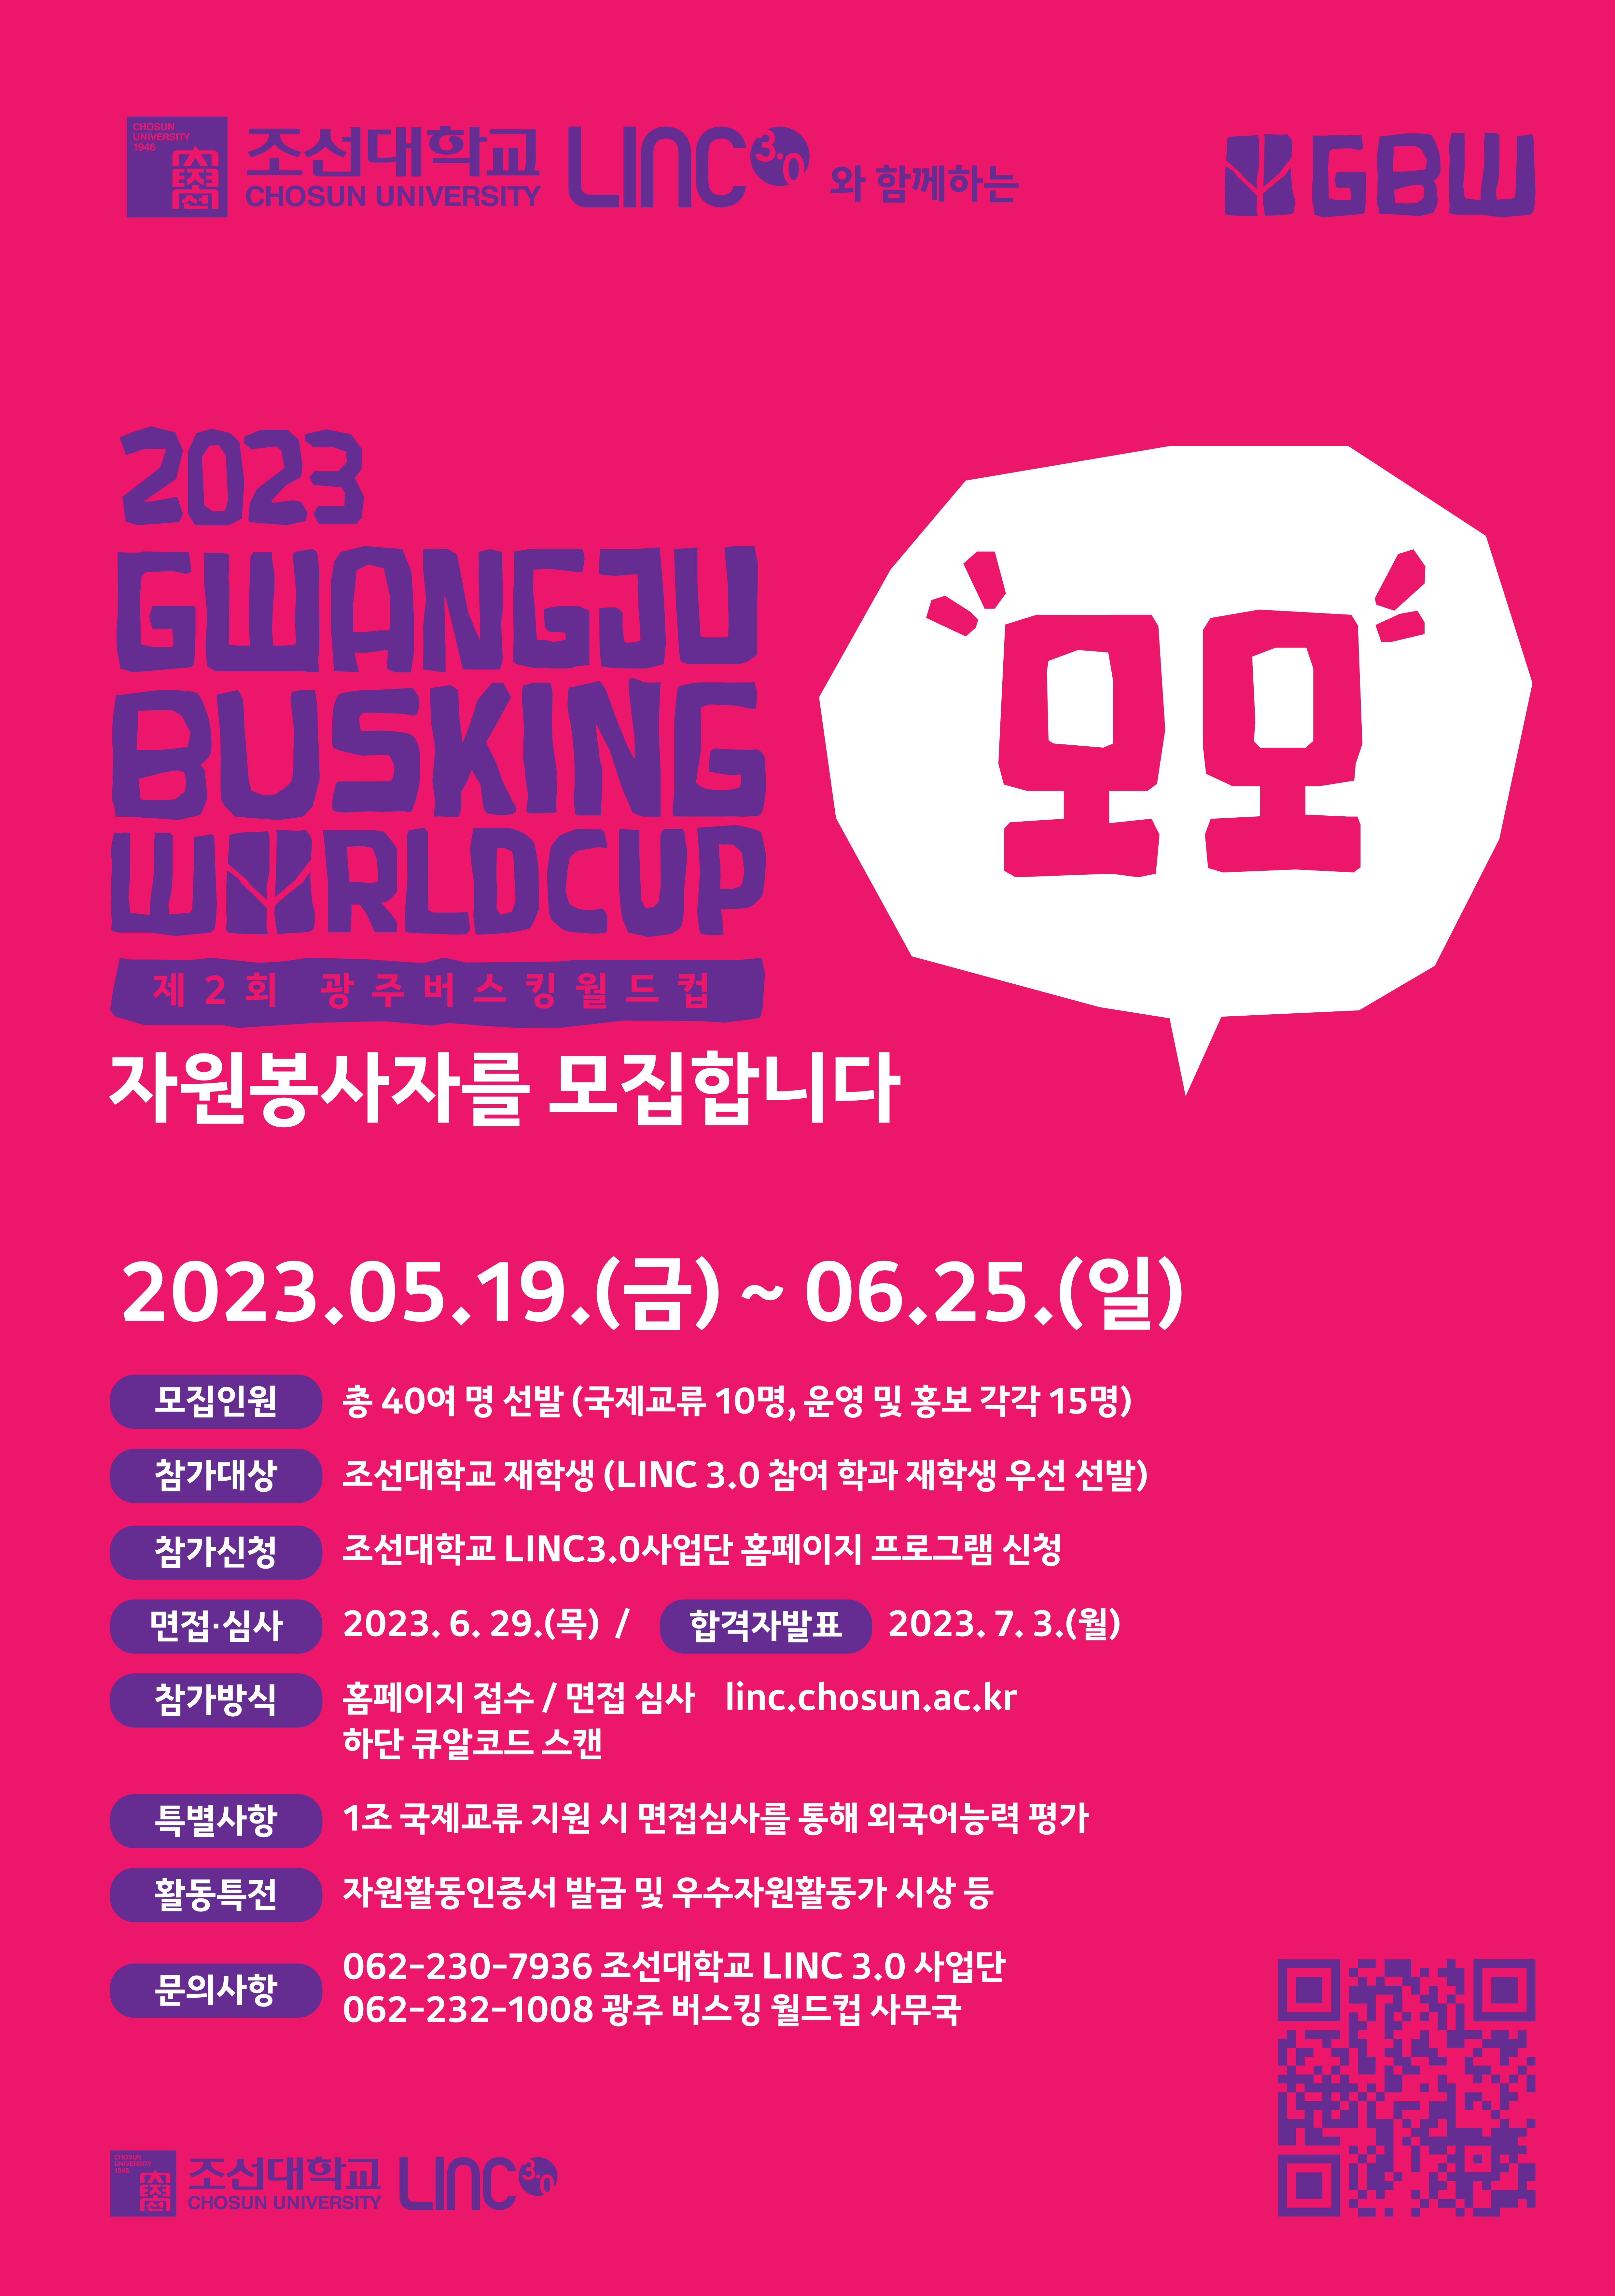 제2회 광주 버스킹 월드컵 자원봉사자 모집!!(~06.25.)[LINC 3.0 사업단]